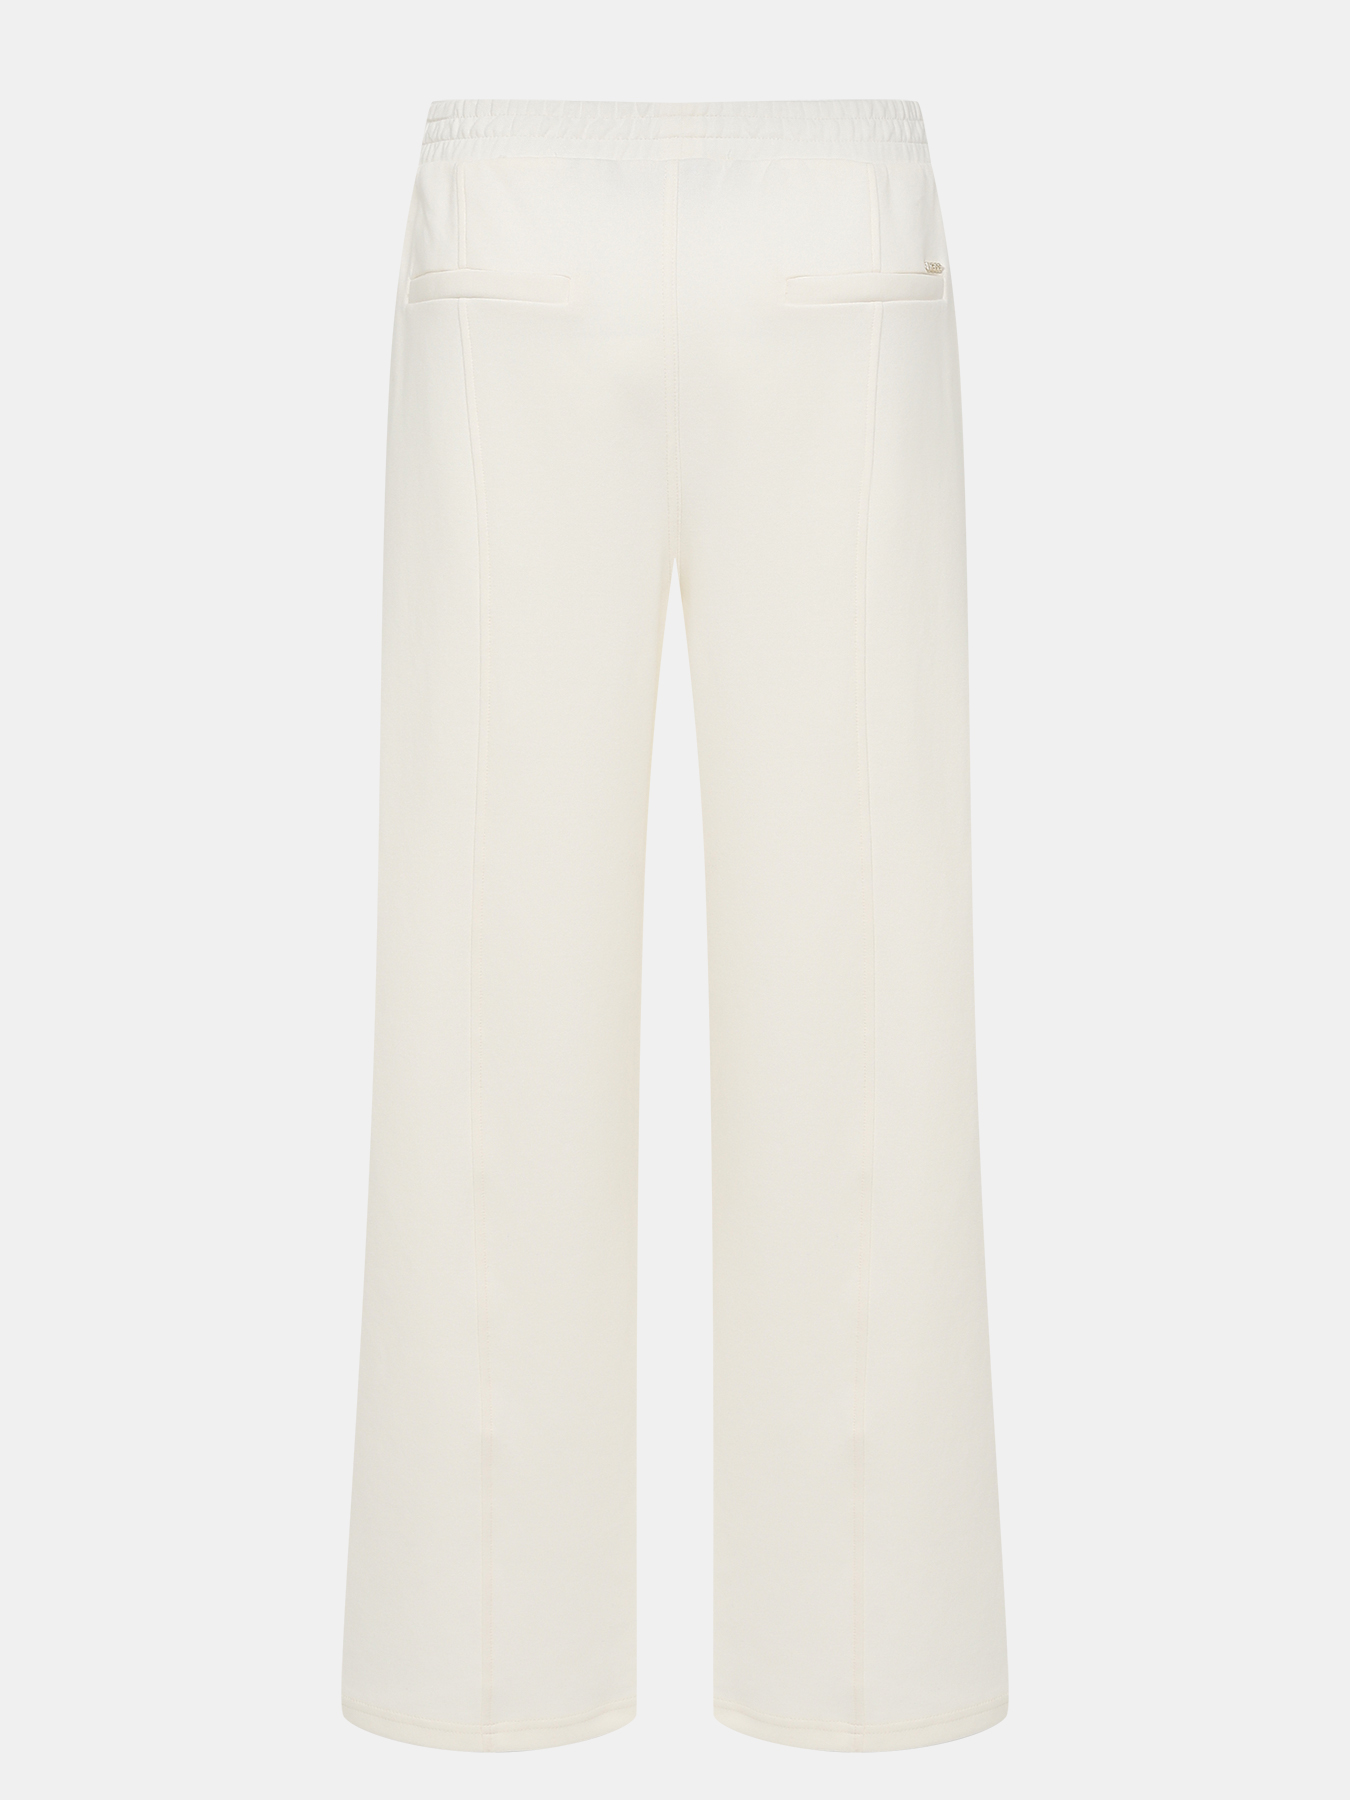 Спортивные брюки Elsam BOSS 424155-041, цвет белый, размер 40-42 - фото 3